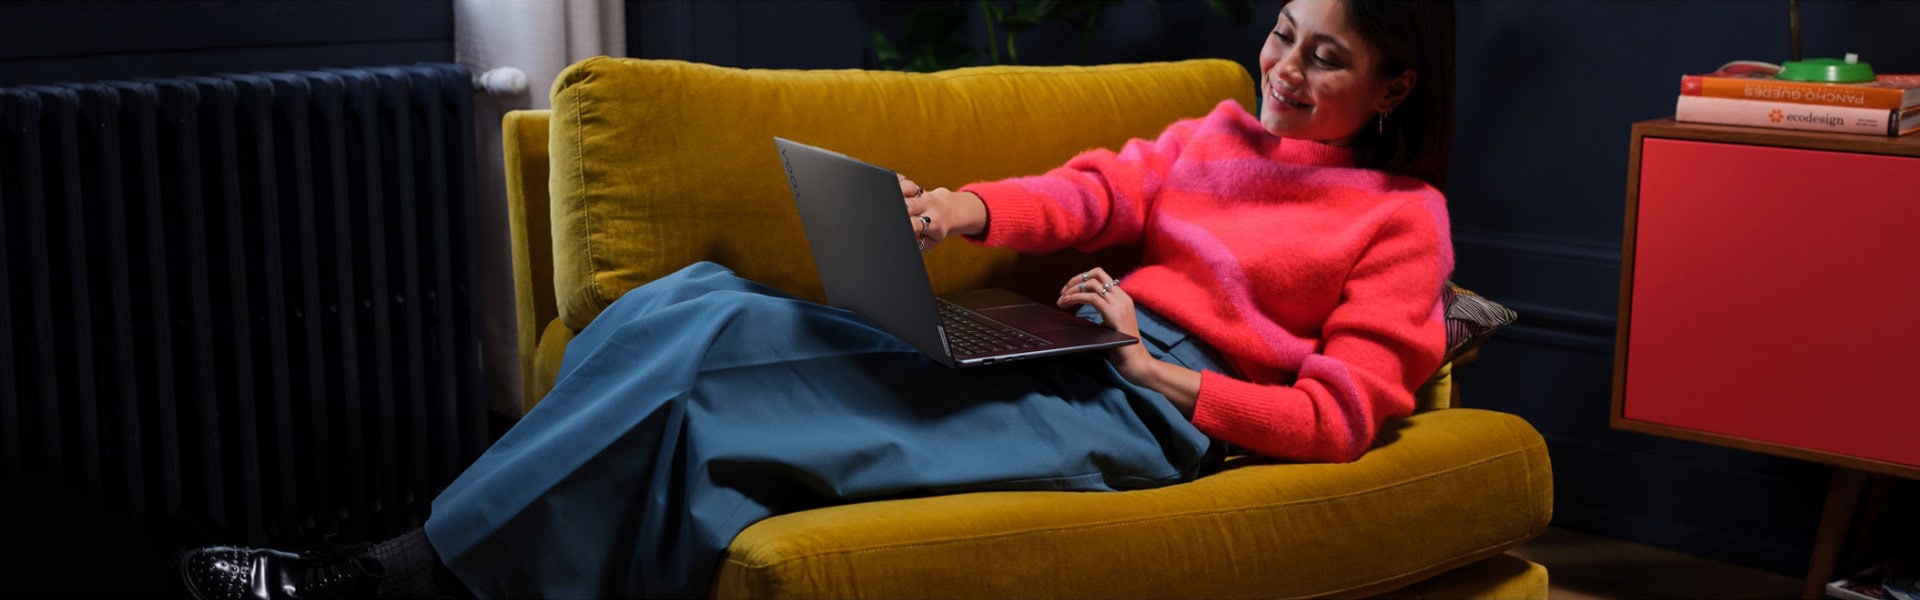 Uma mulher reclinada numa grande cadeira com o seu portátil Lenovo Yoga pousado no colo